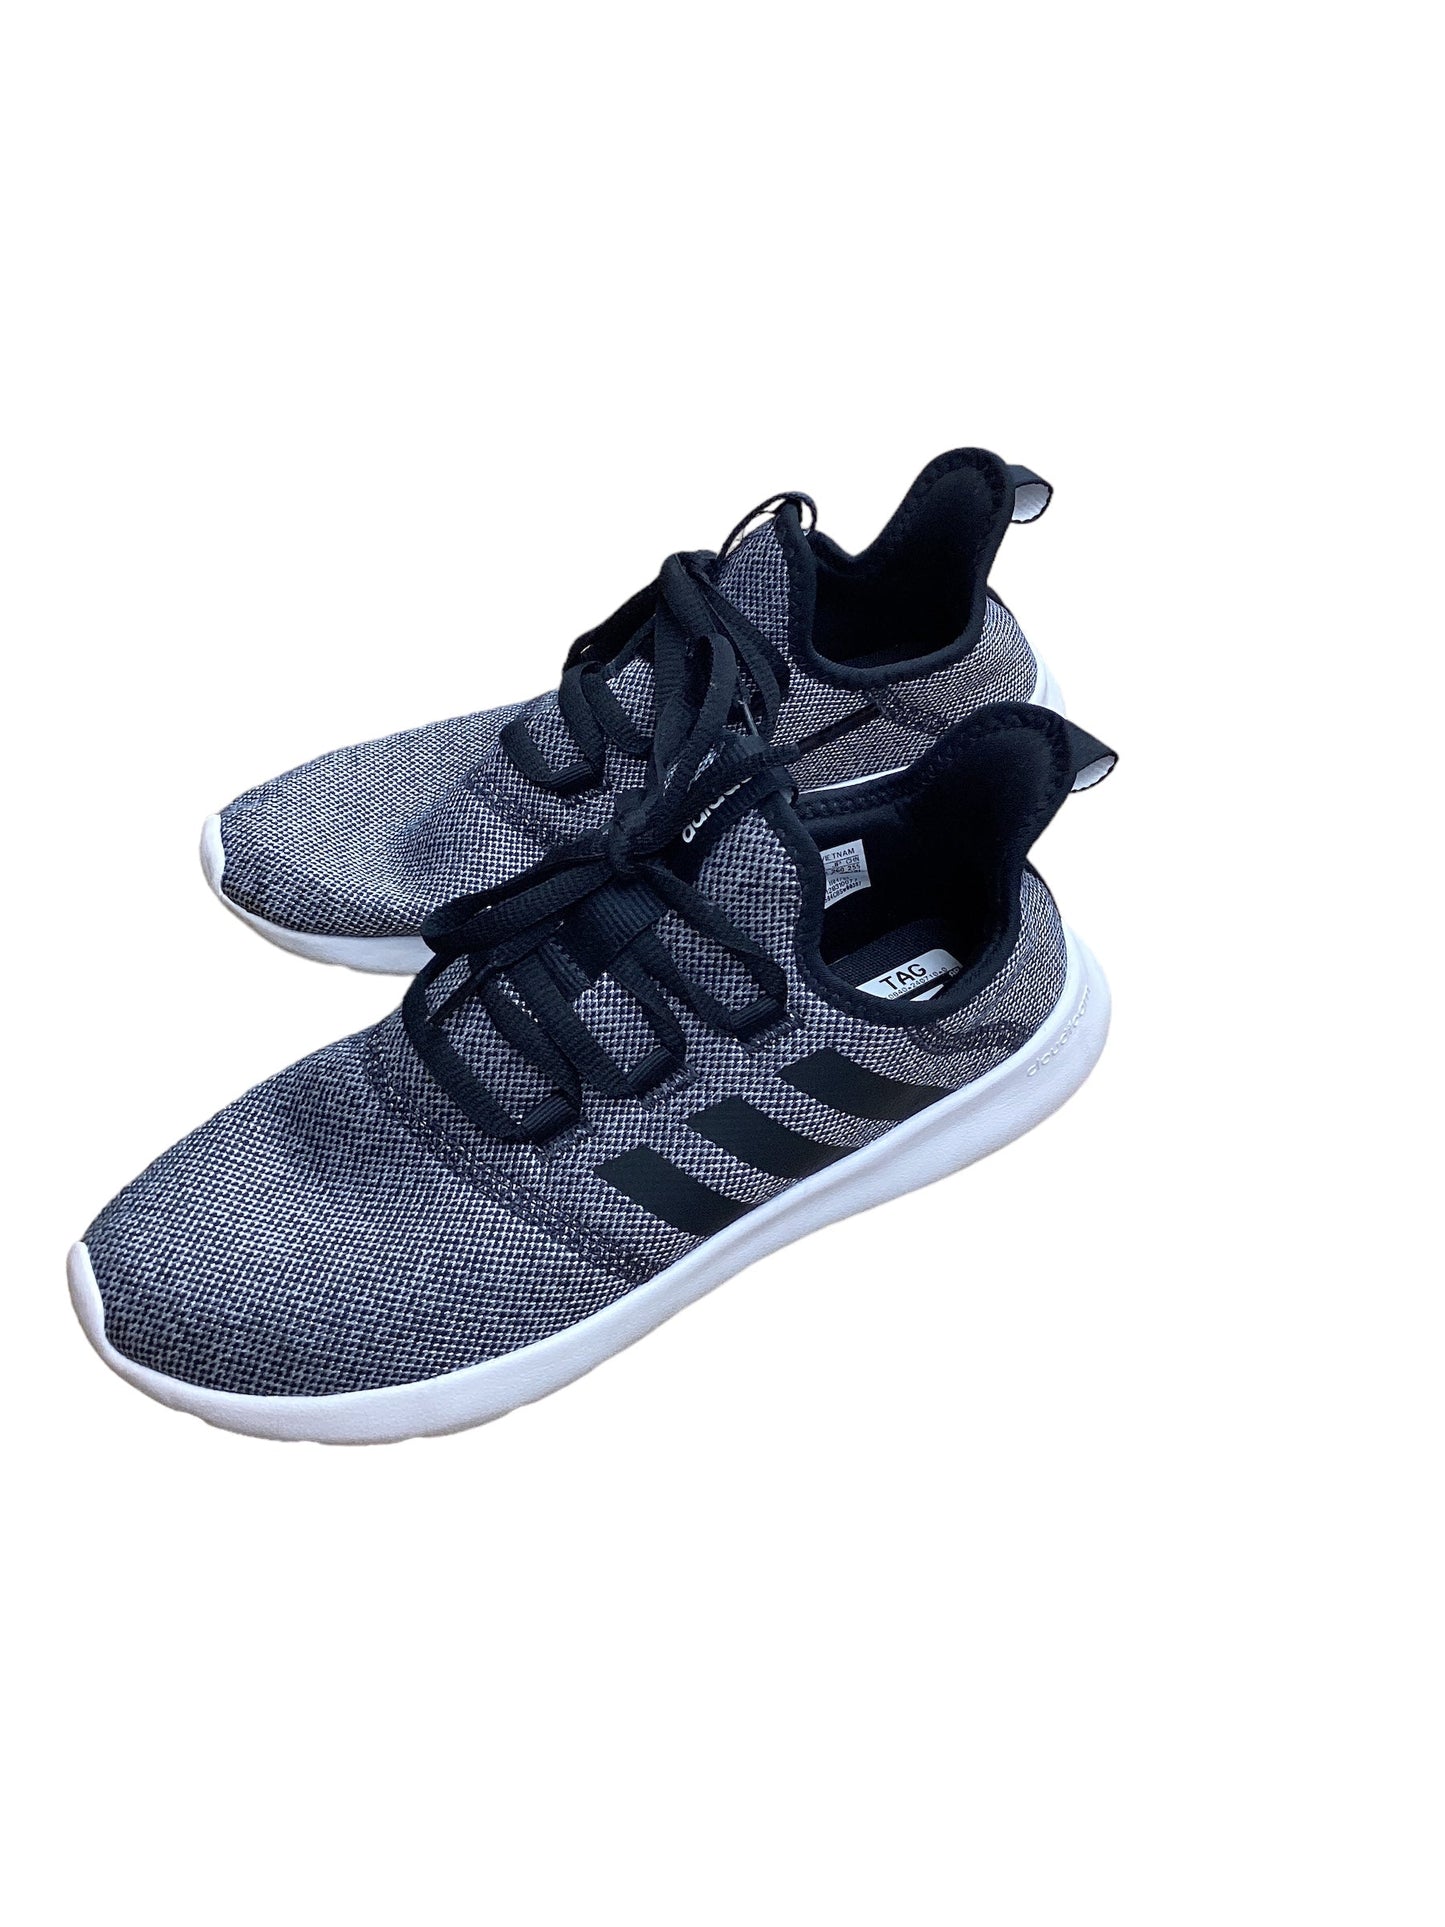 Black & Grey Shoes Athletic Adidas, Size 9